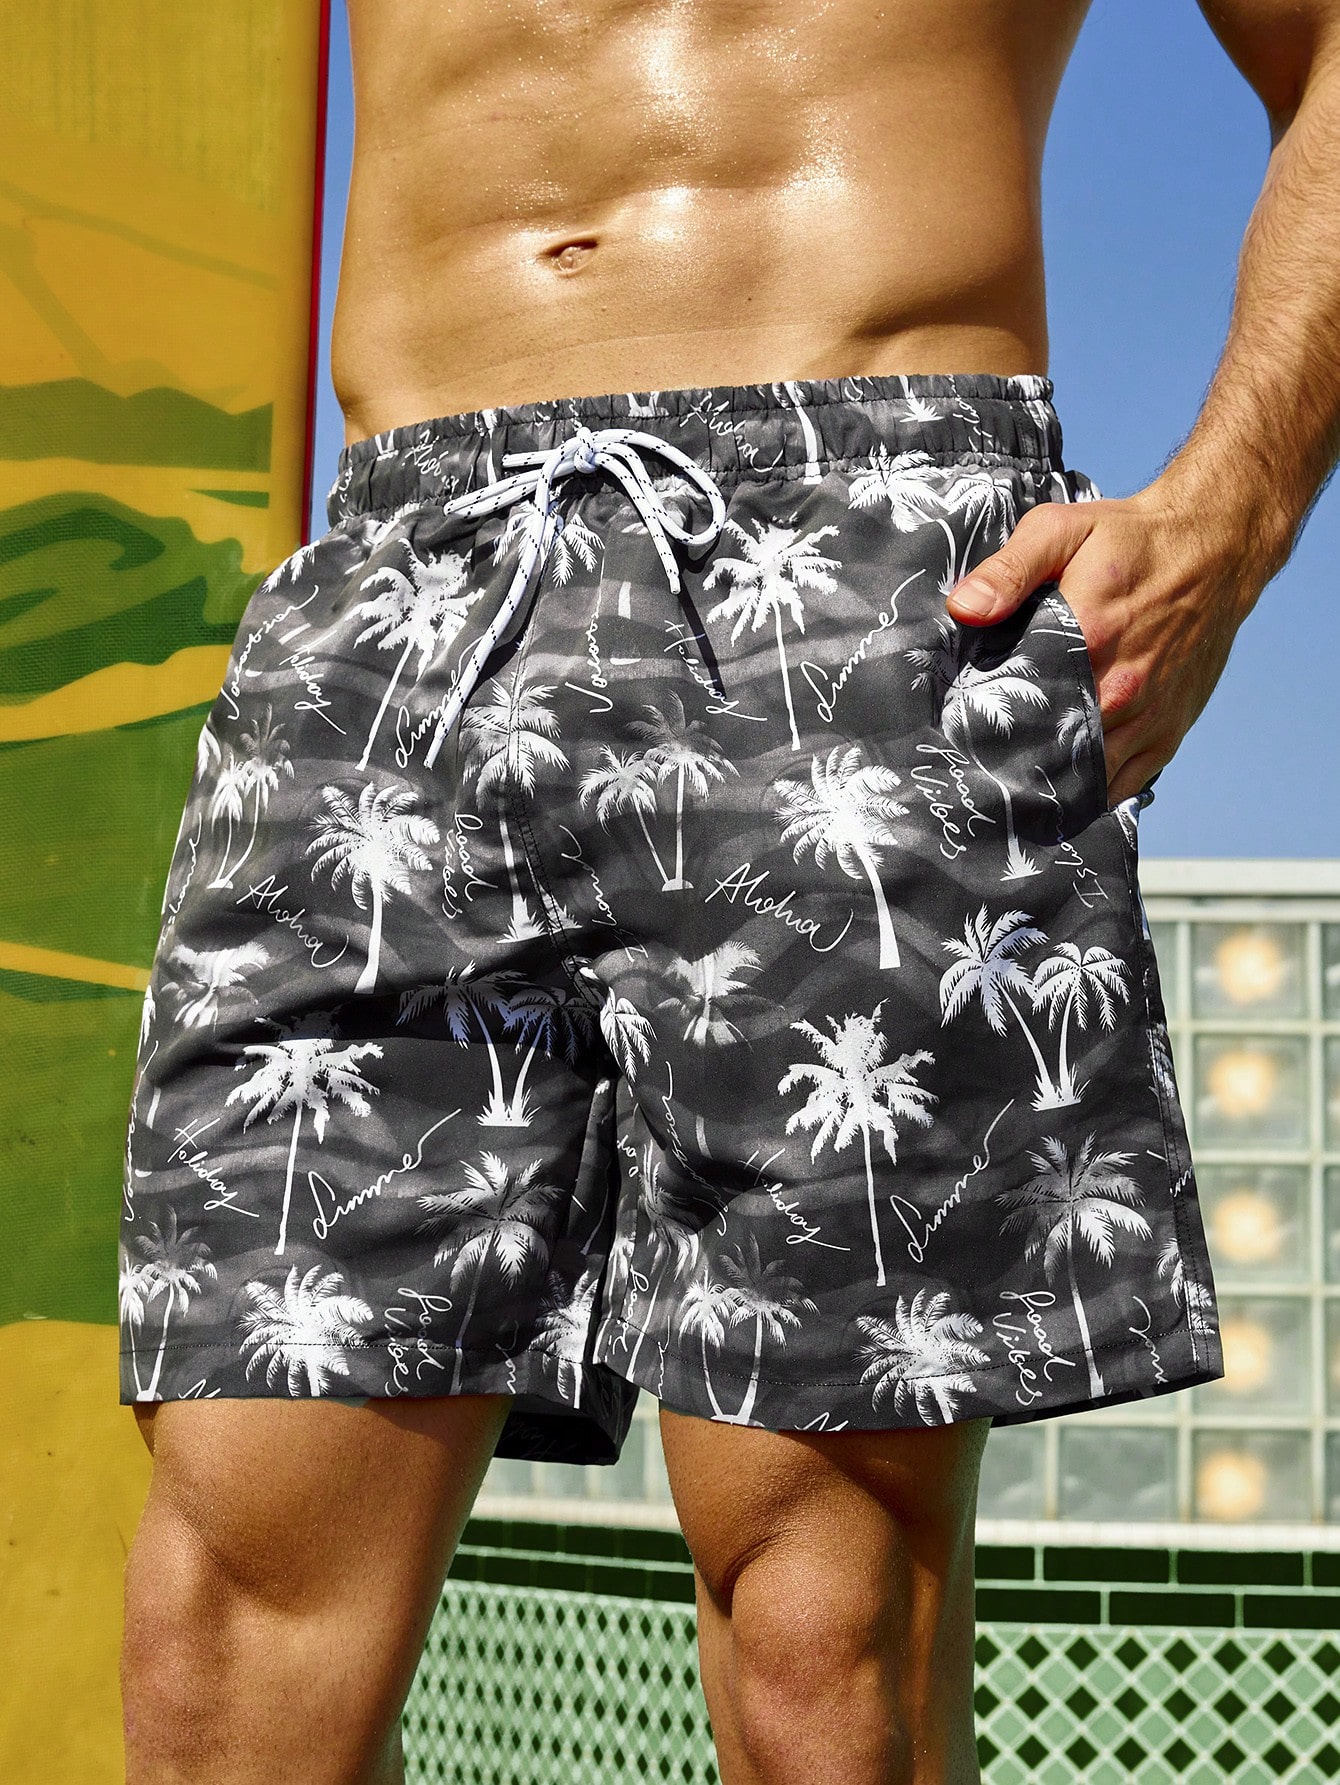 Мужские пляжные шорты с принтом пальм и завязками на талии, многоцветный